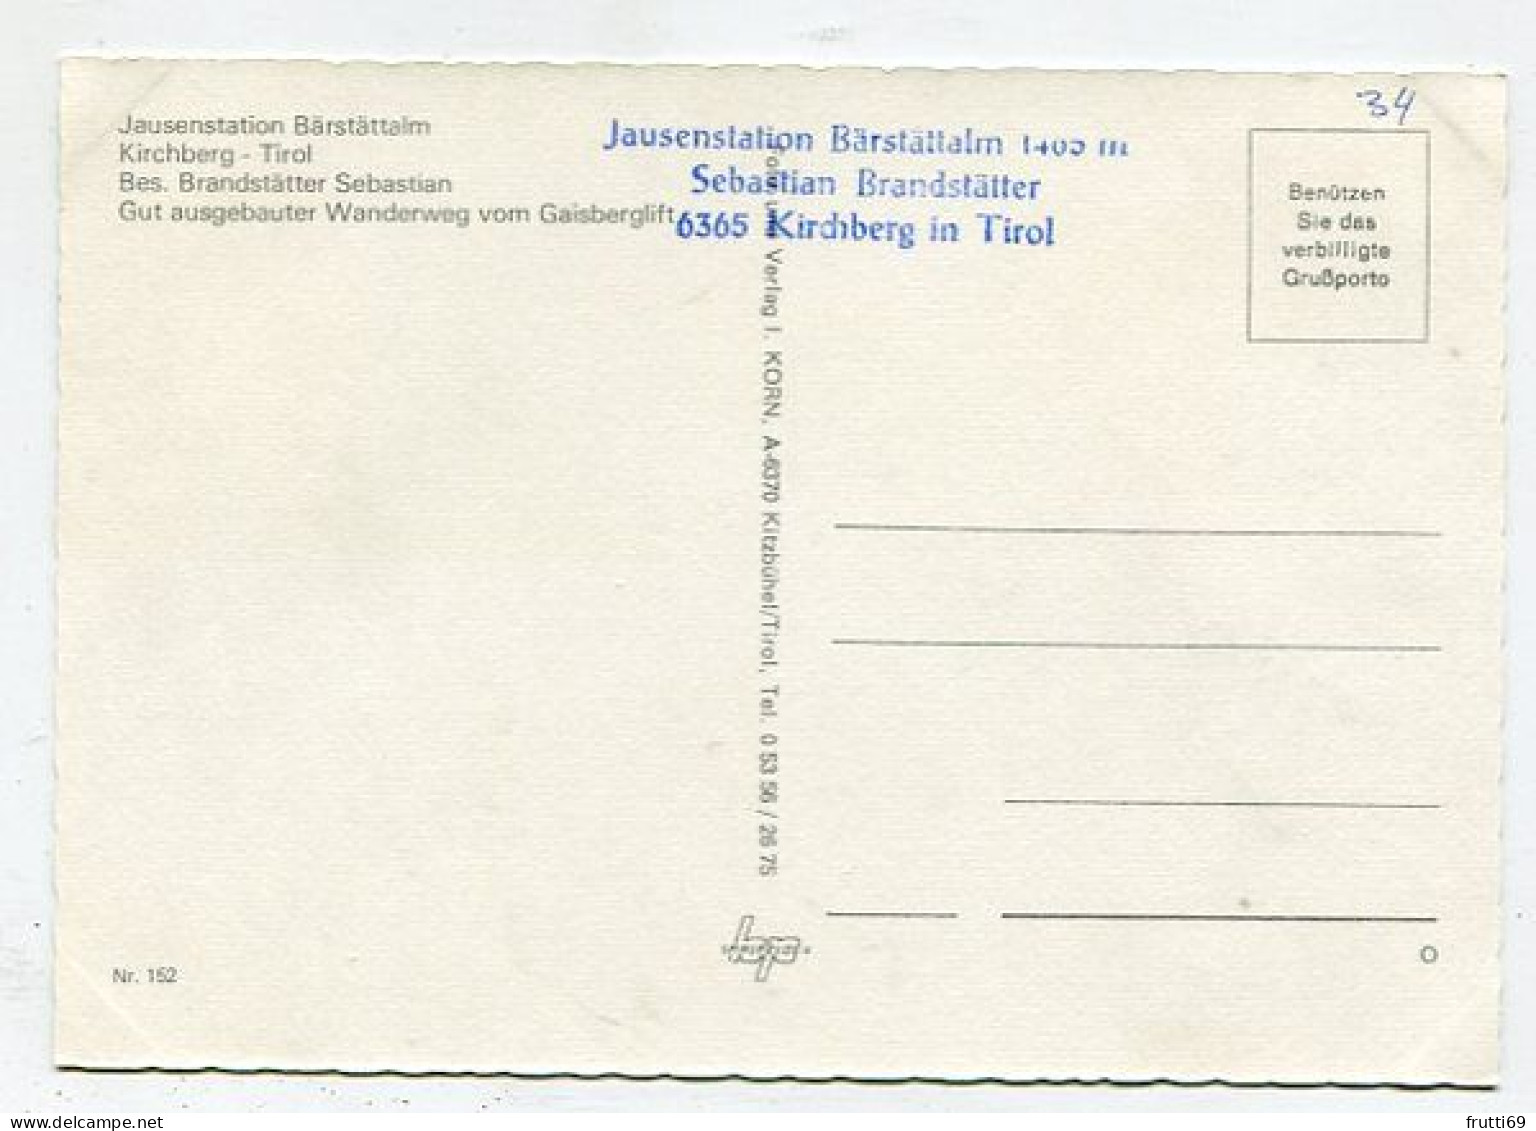 AK 145948 AUSTRIA - Kirchberg - Jausenstation Bärstättalm - Kirchberg